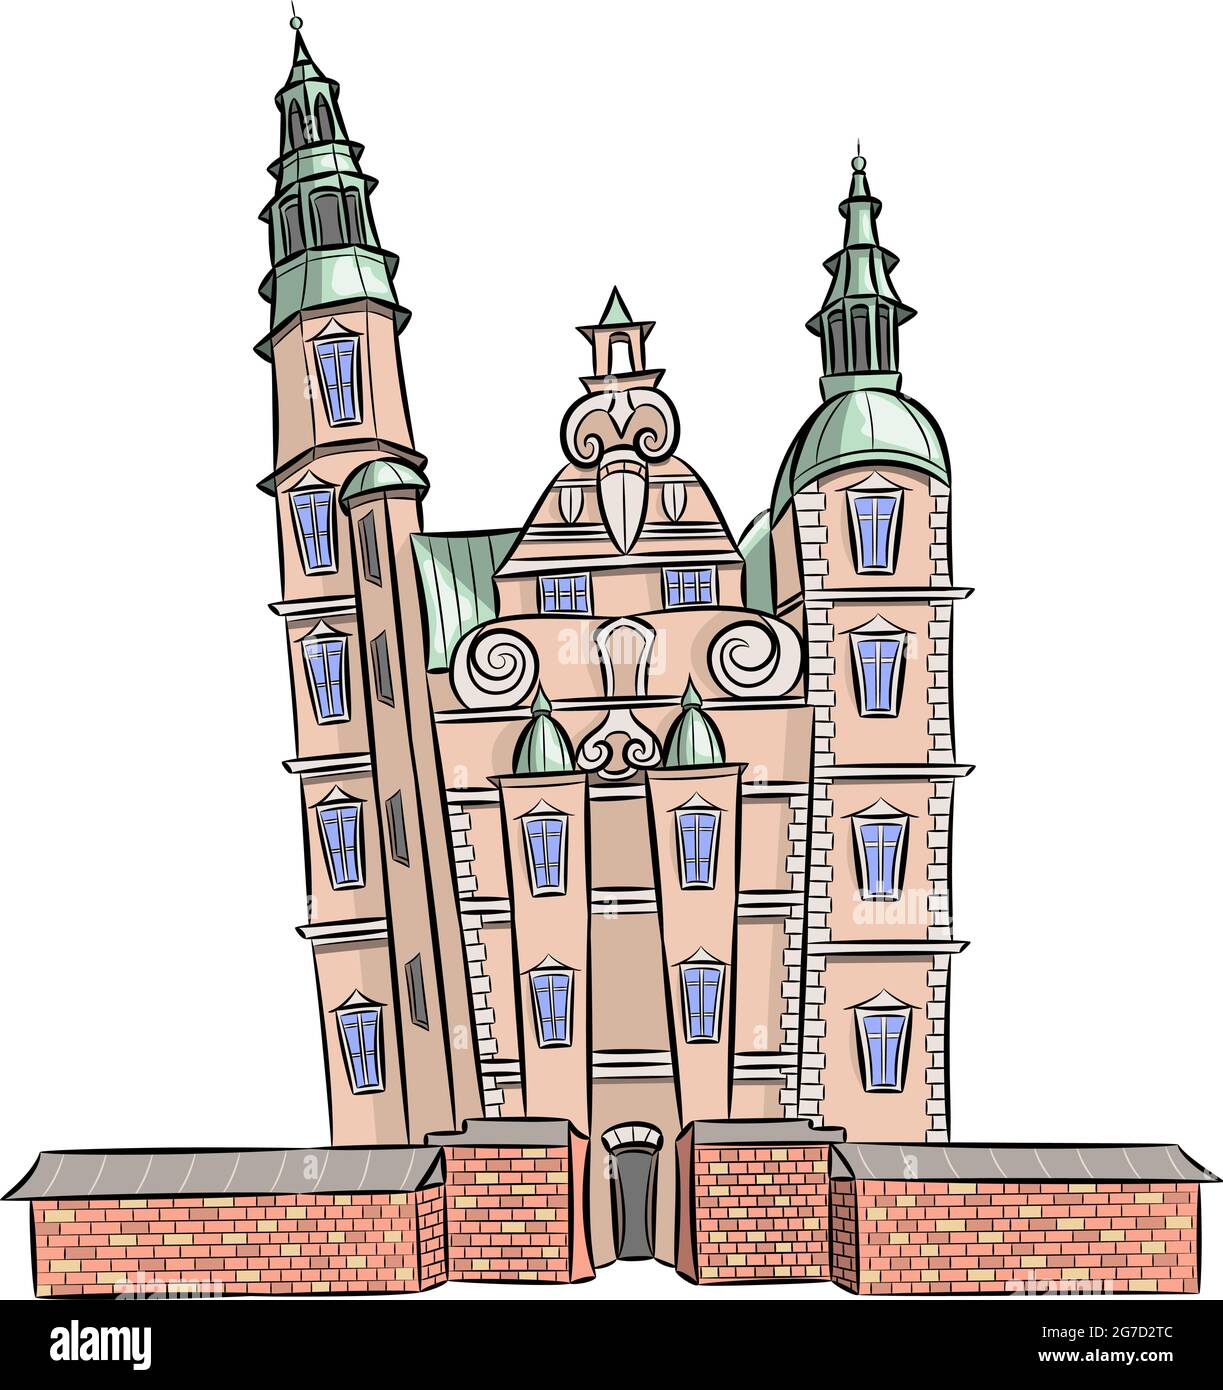 Ancien château royal avec tours de Rosenborg. Illustration à vecteur de couleur sur fond blanc. Copenhague. Danemark. Illustration de Vecteur